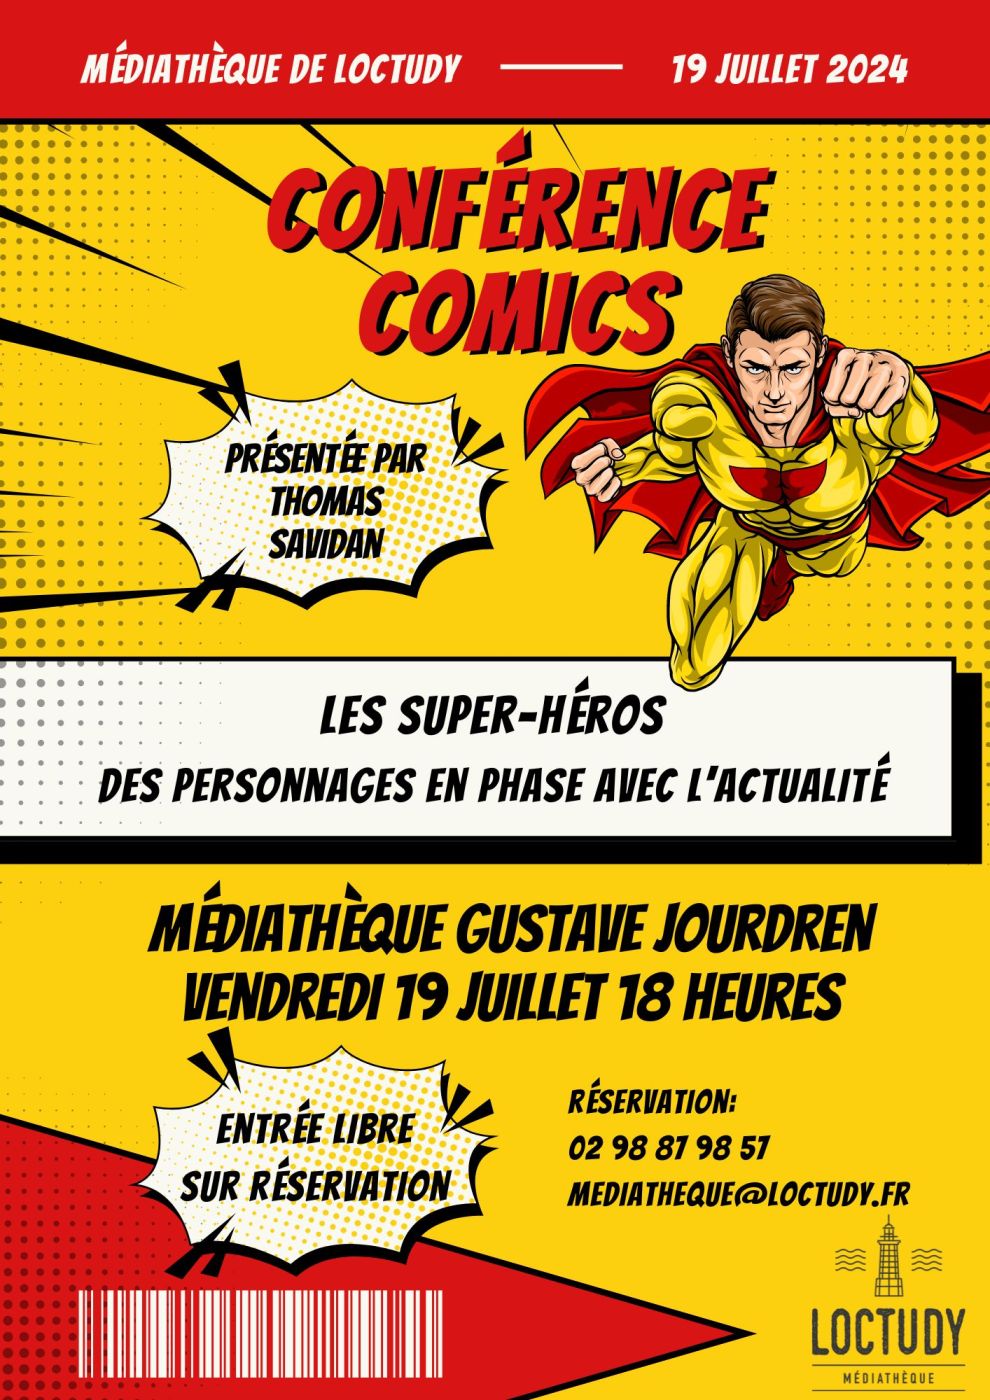 Affiche de la conférence Les uper-héros des personnages en phase avec l'actualité par Thomasd Savidan. Médiathèque de Loctudy, vendredi 19 juillet à 18h00.